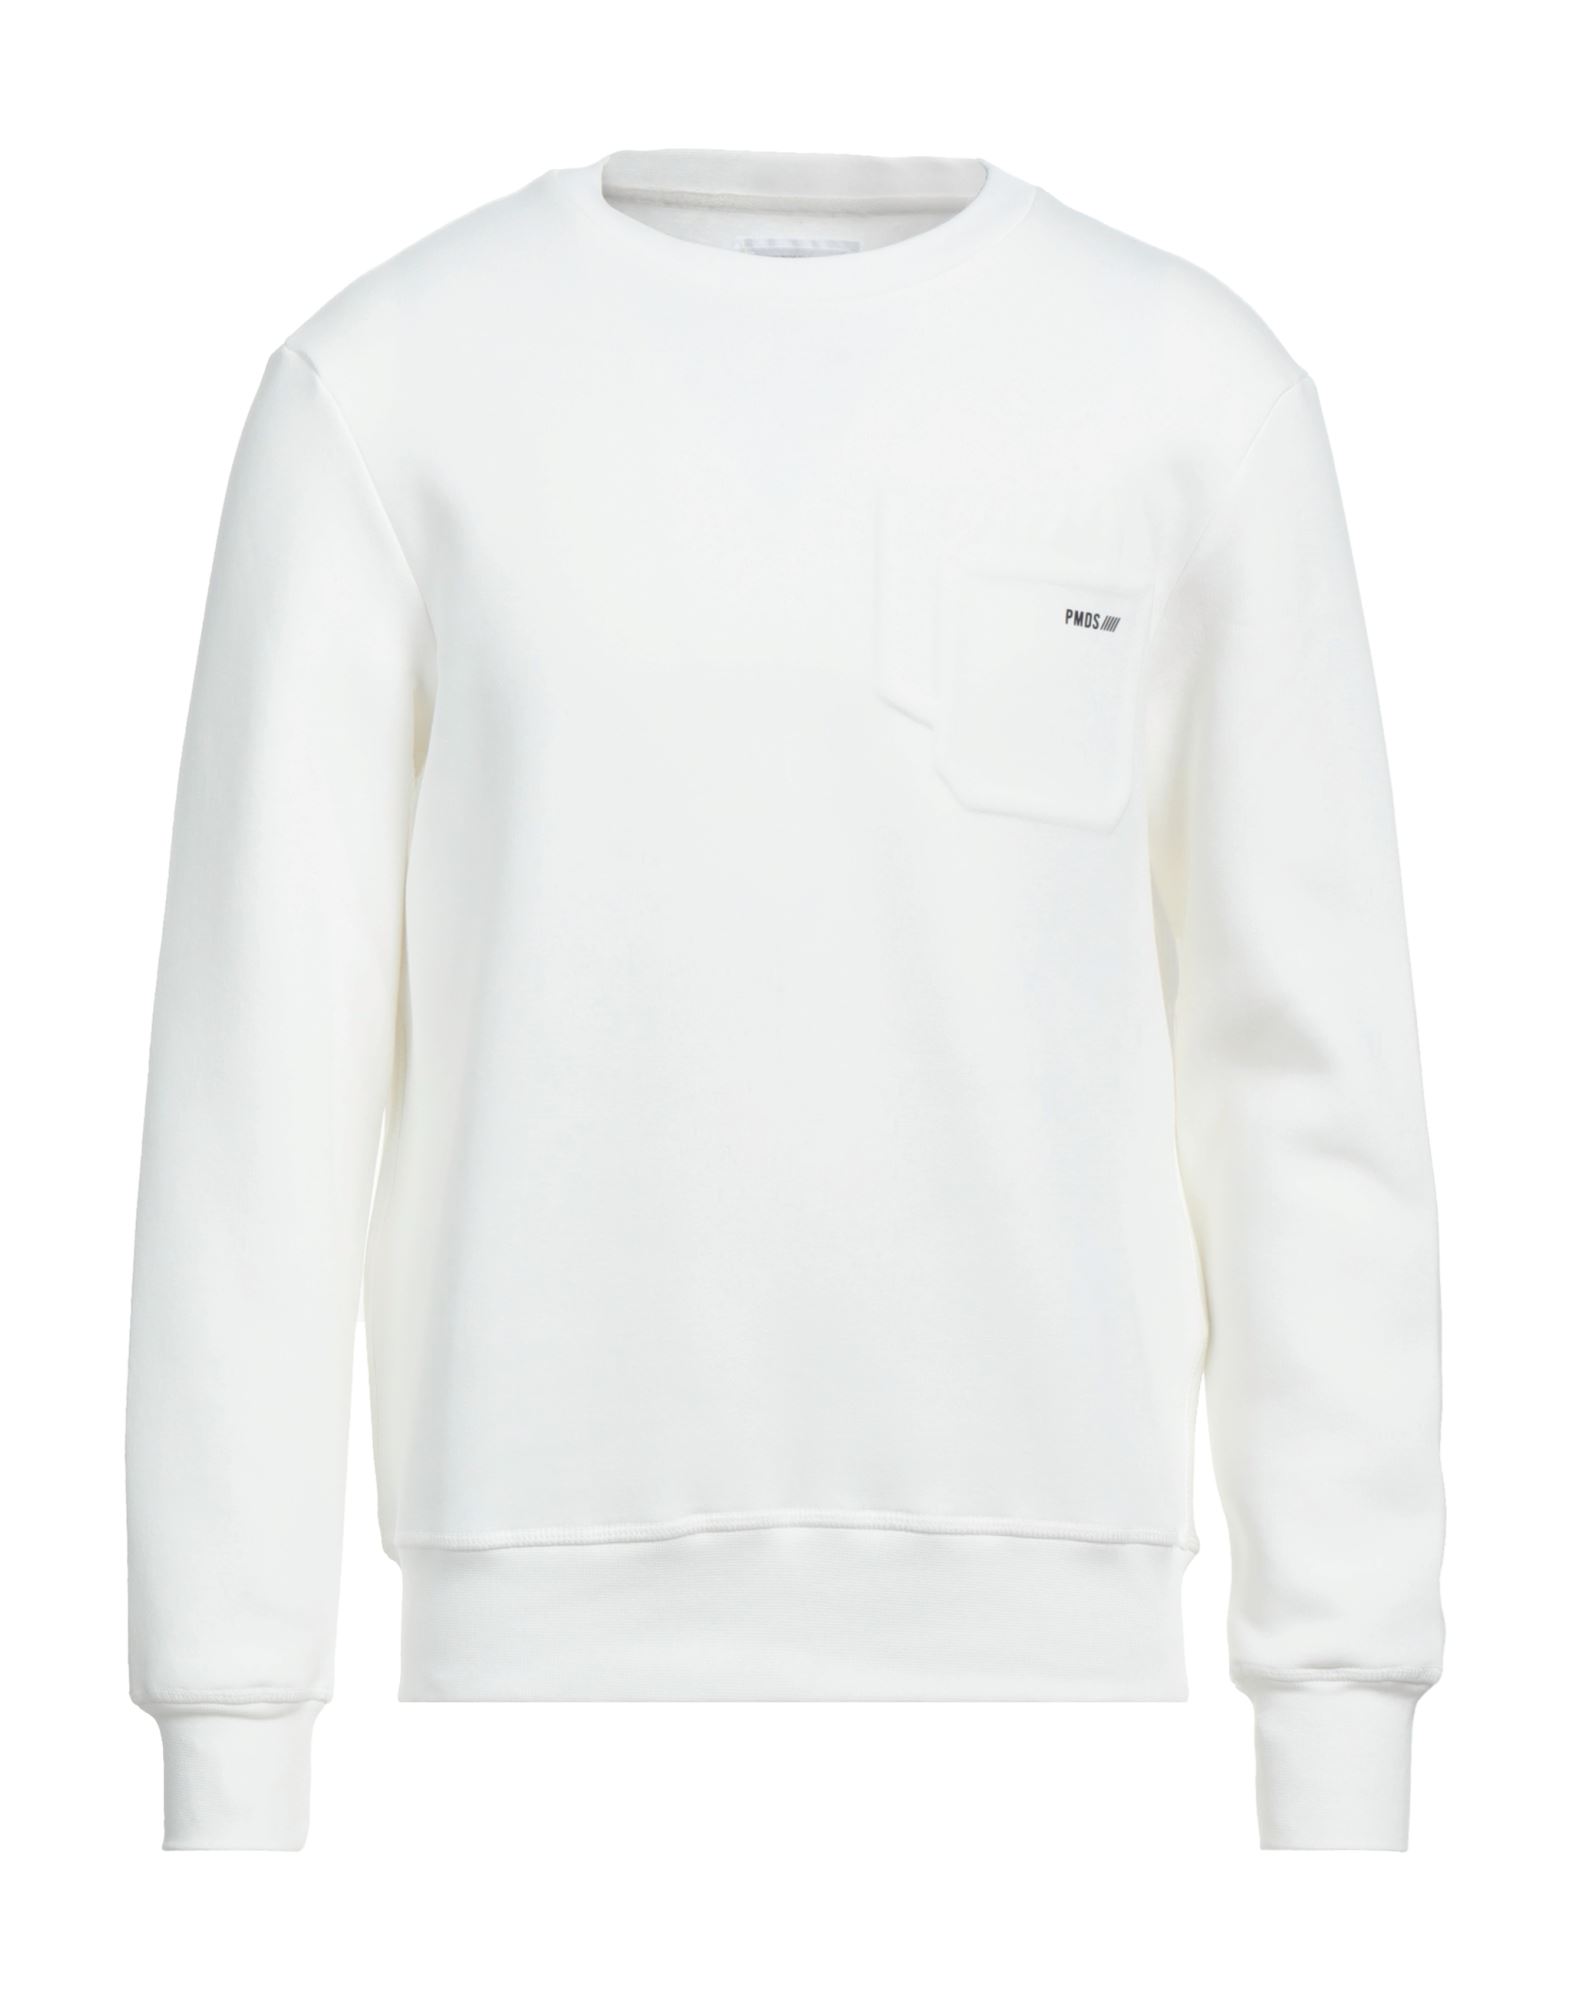 Pmds Premium Mood Denim Superior Sweatshirts In White